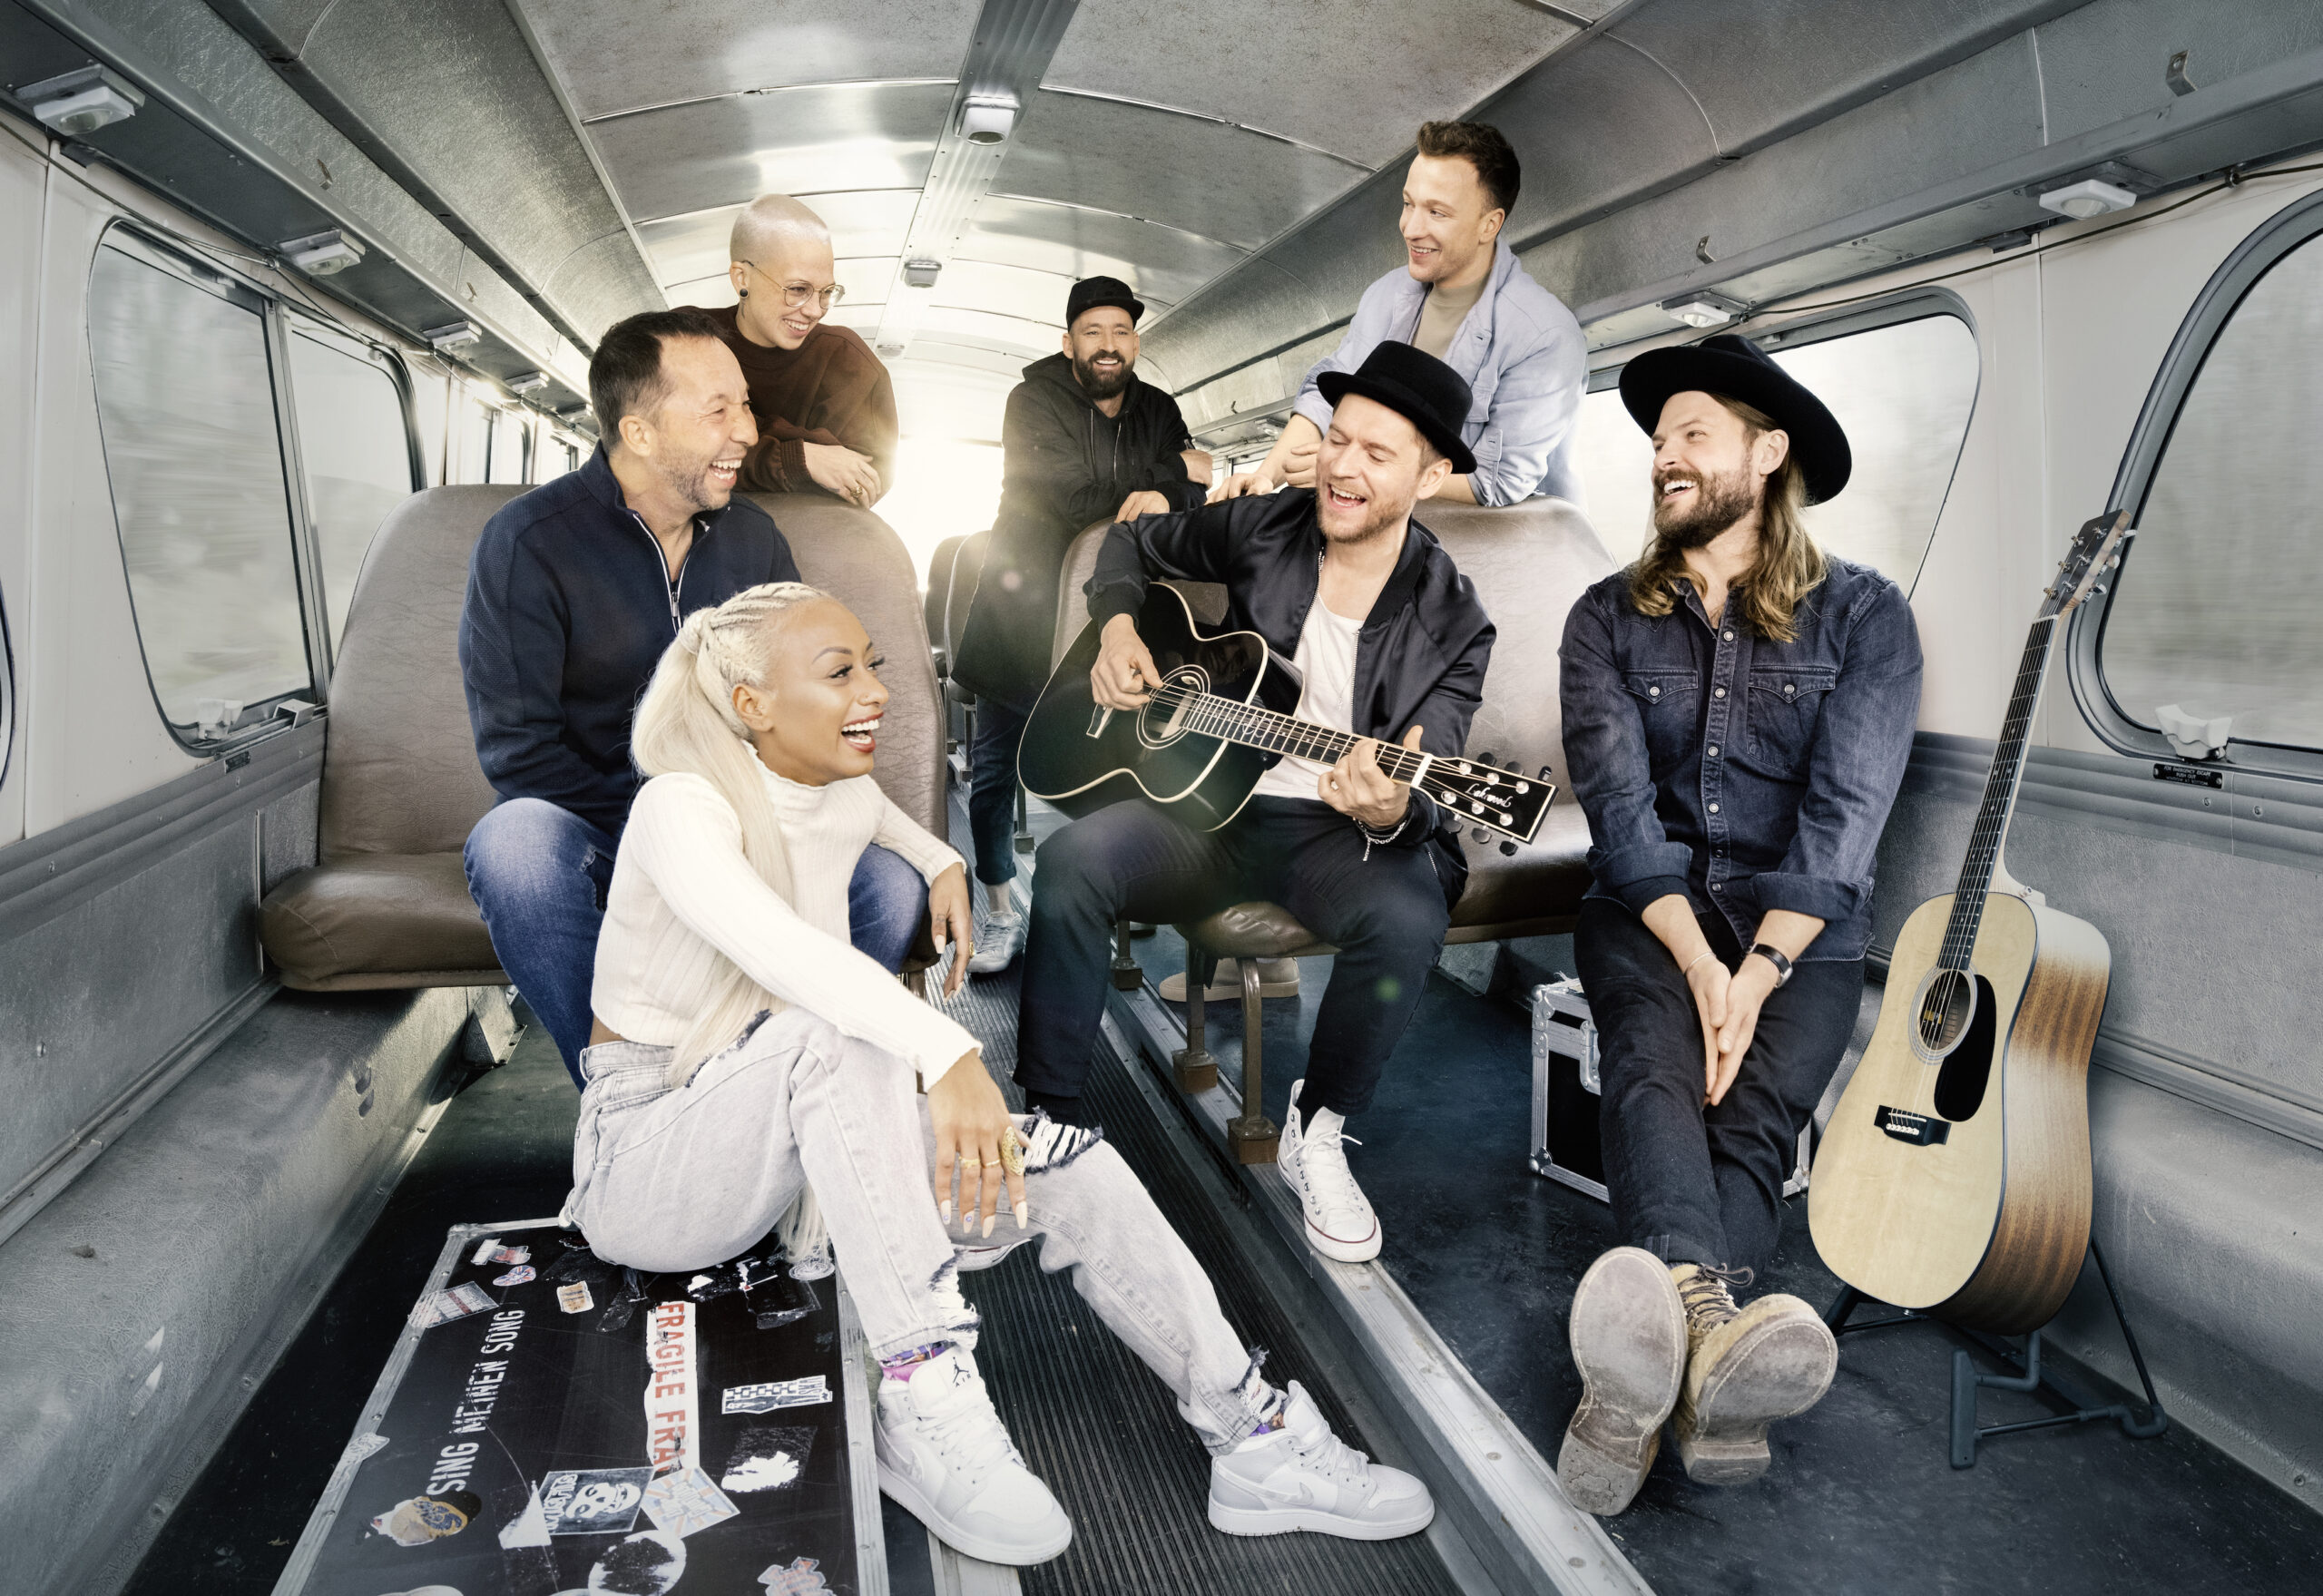 Alle Teilnehmer der achten Staffel von "Sing meinen Song - Das Tauschkonzert" sitzen in einem Bus-Laderaum. Oerding spielt Gitarre